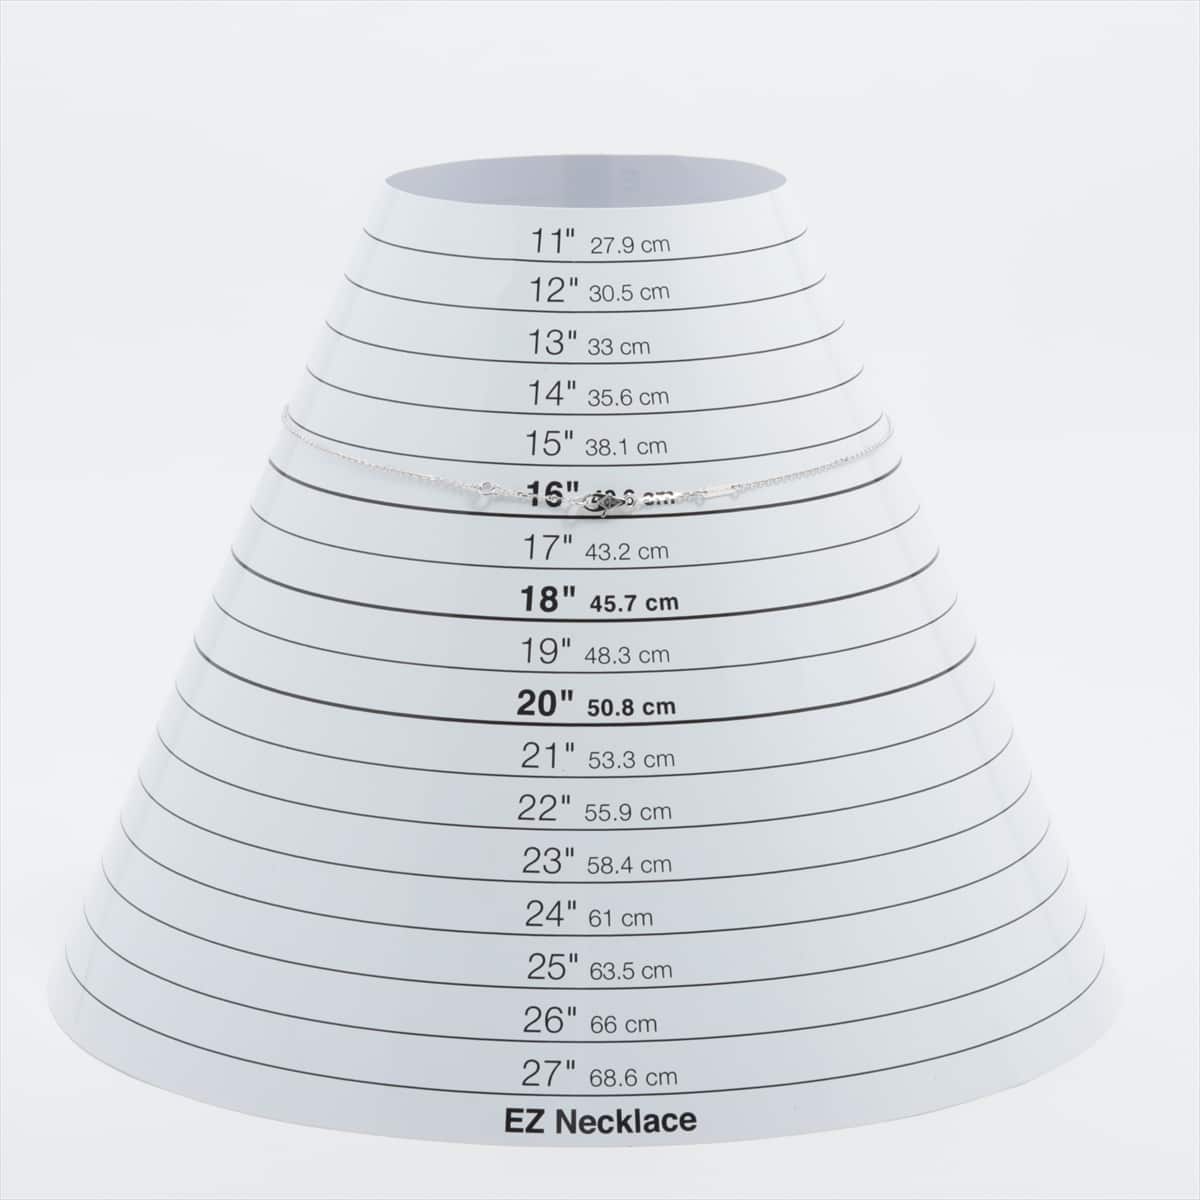 ヴァンクリーフ&アーペル スウィートアルハンブラ ダイヤ ネックレス 750(WG) 3.4g